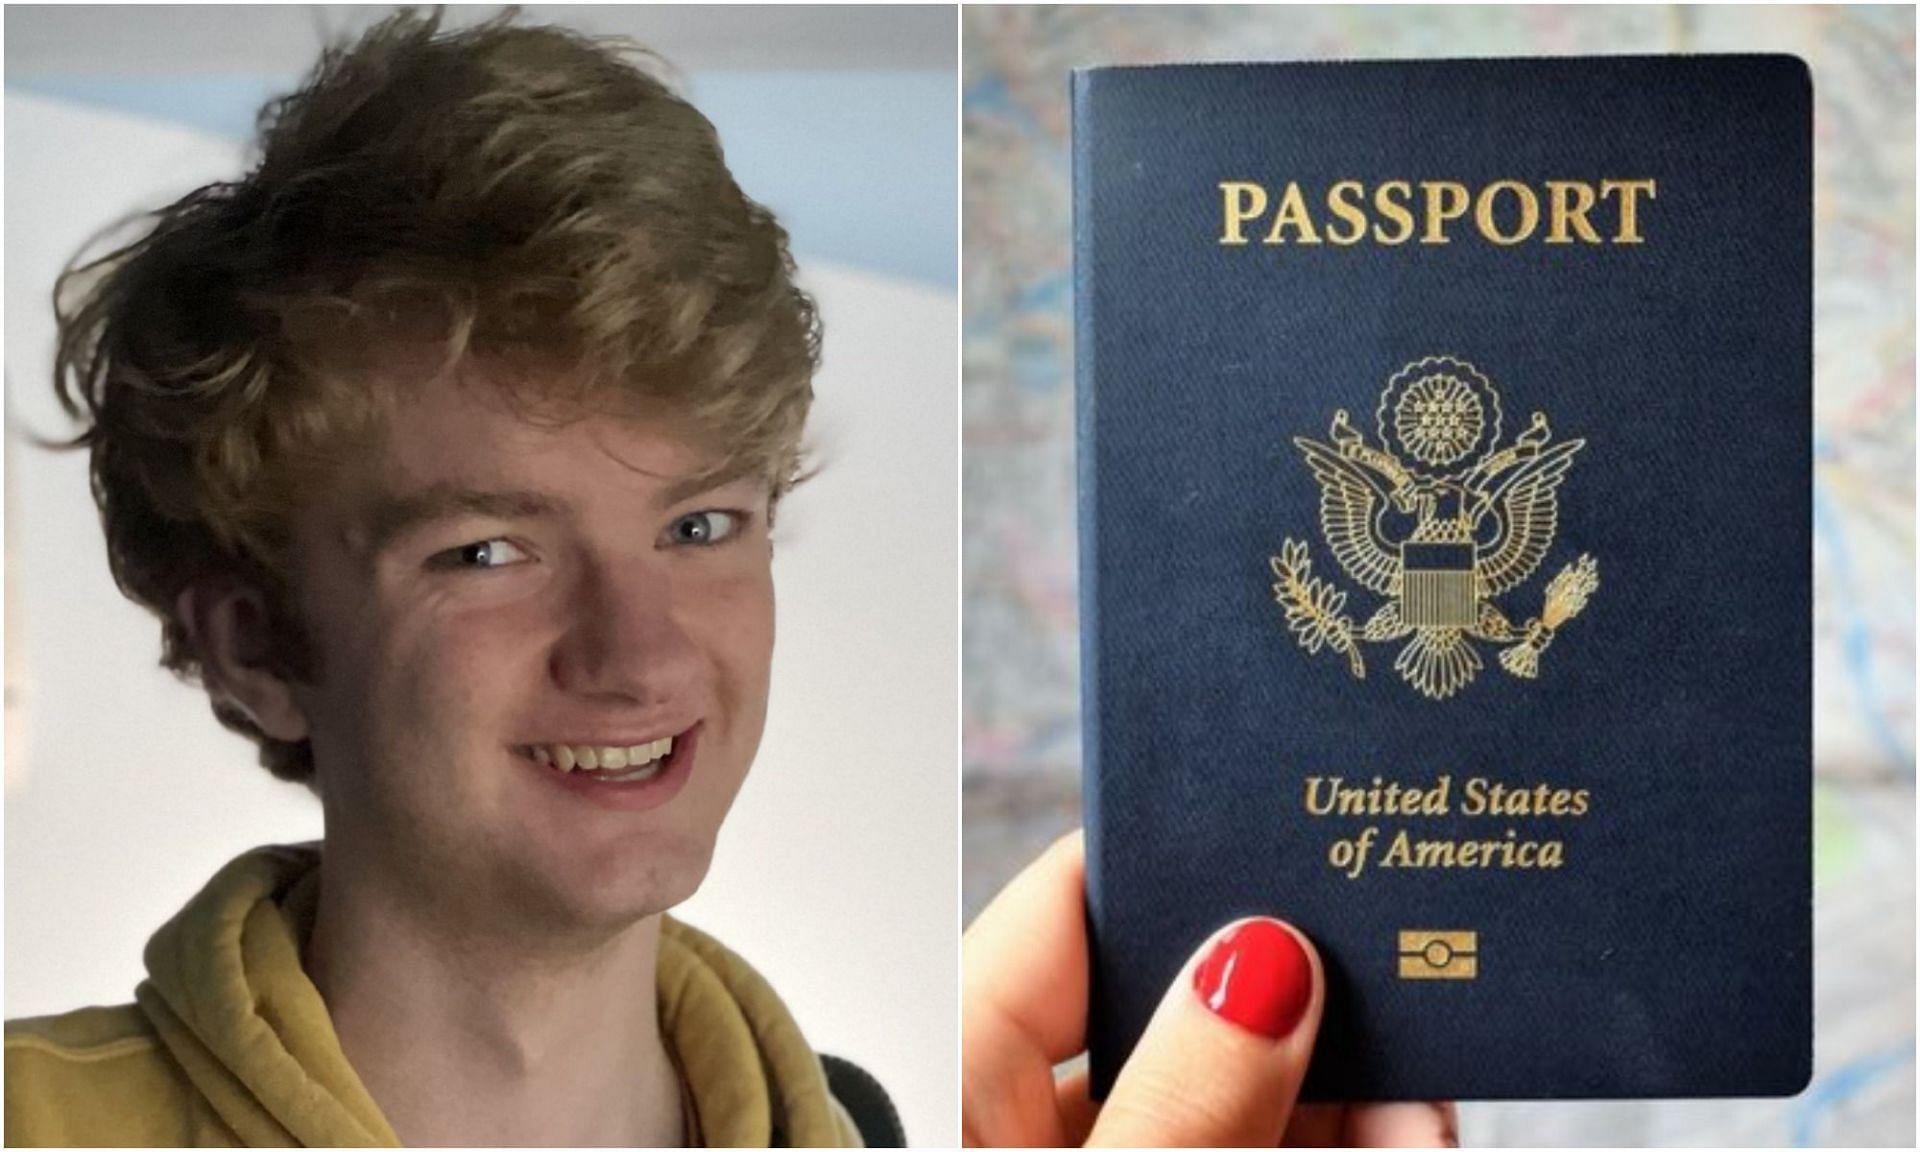 TommyInnit leaks passport image (Image via Sportskeeda)